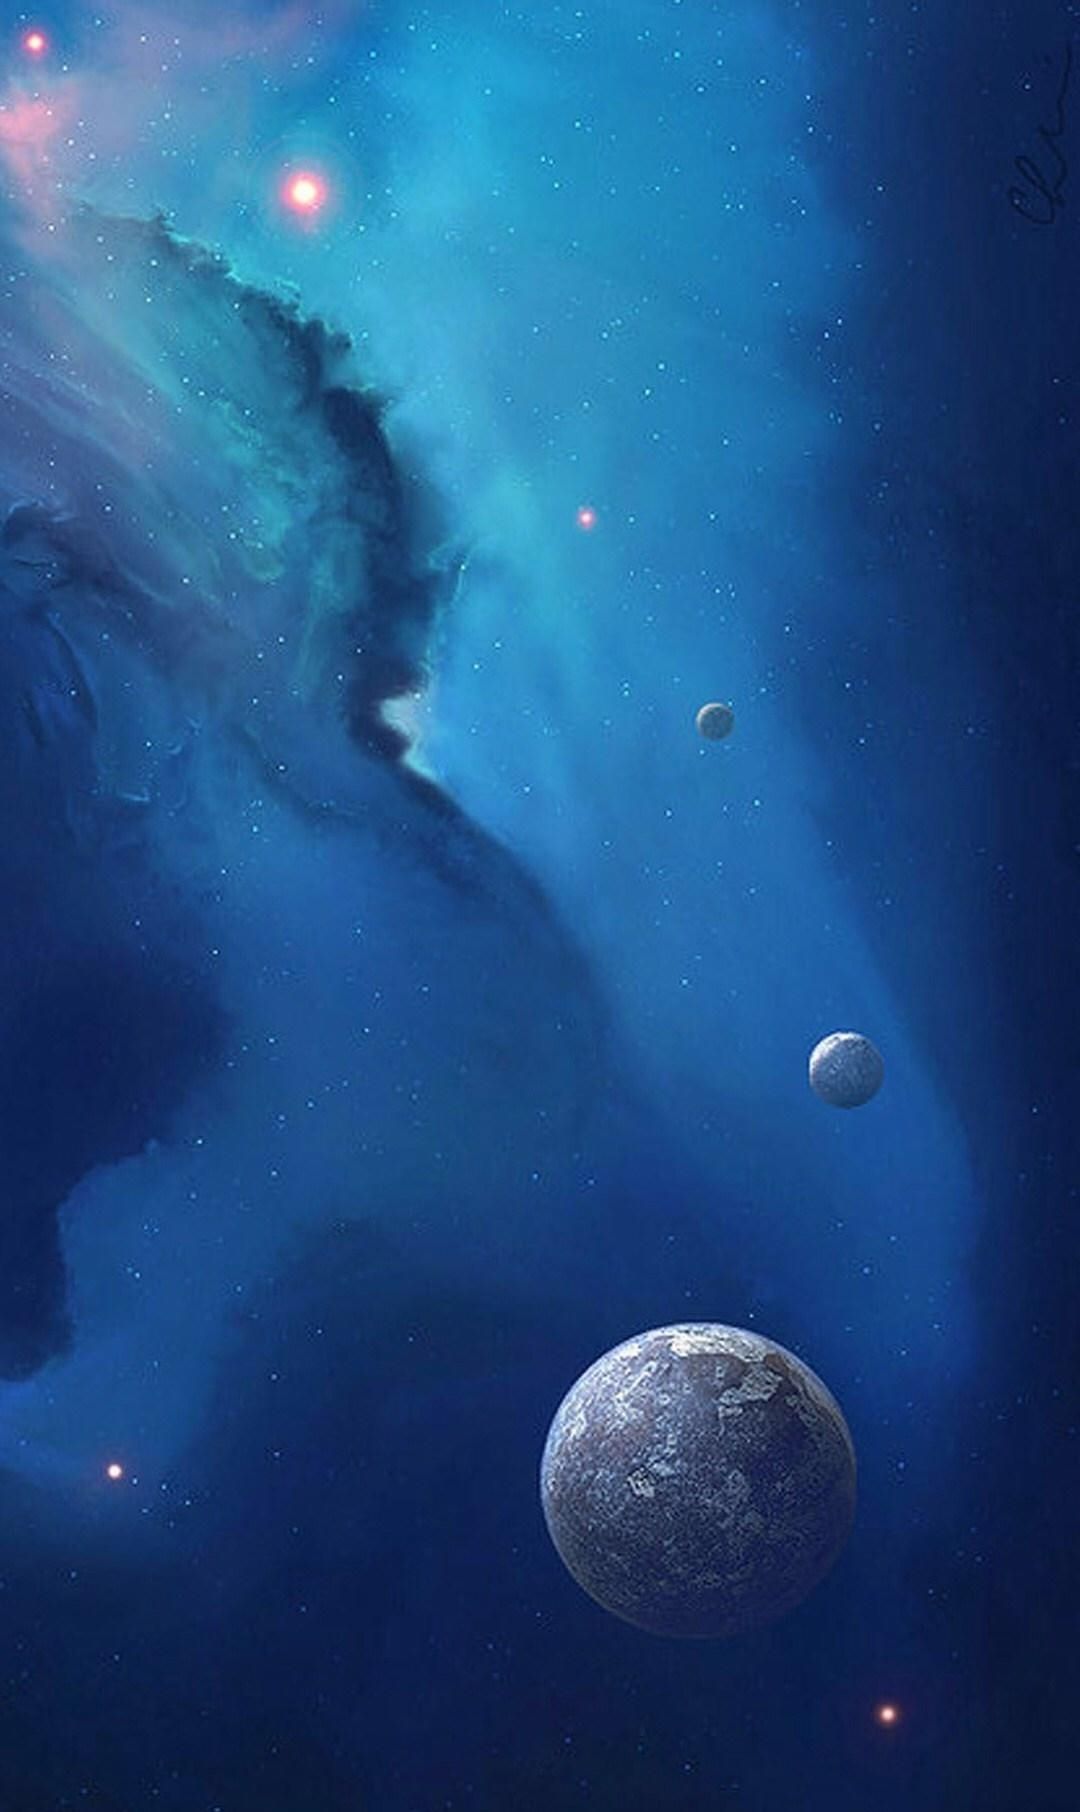 宇宙洪荒手机壁纸:一起欣赏星球之美